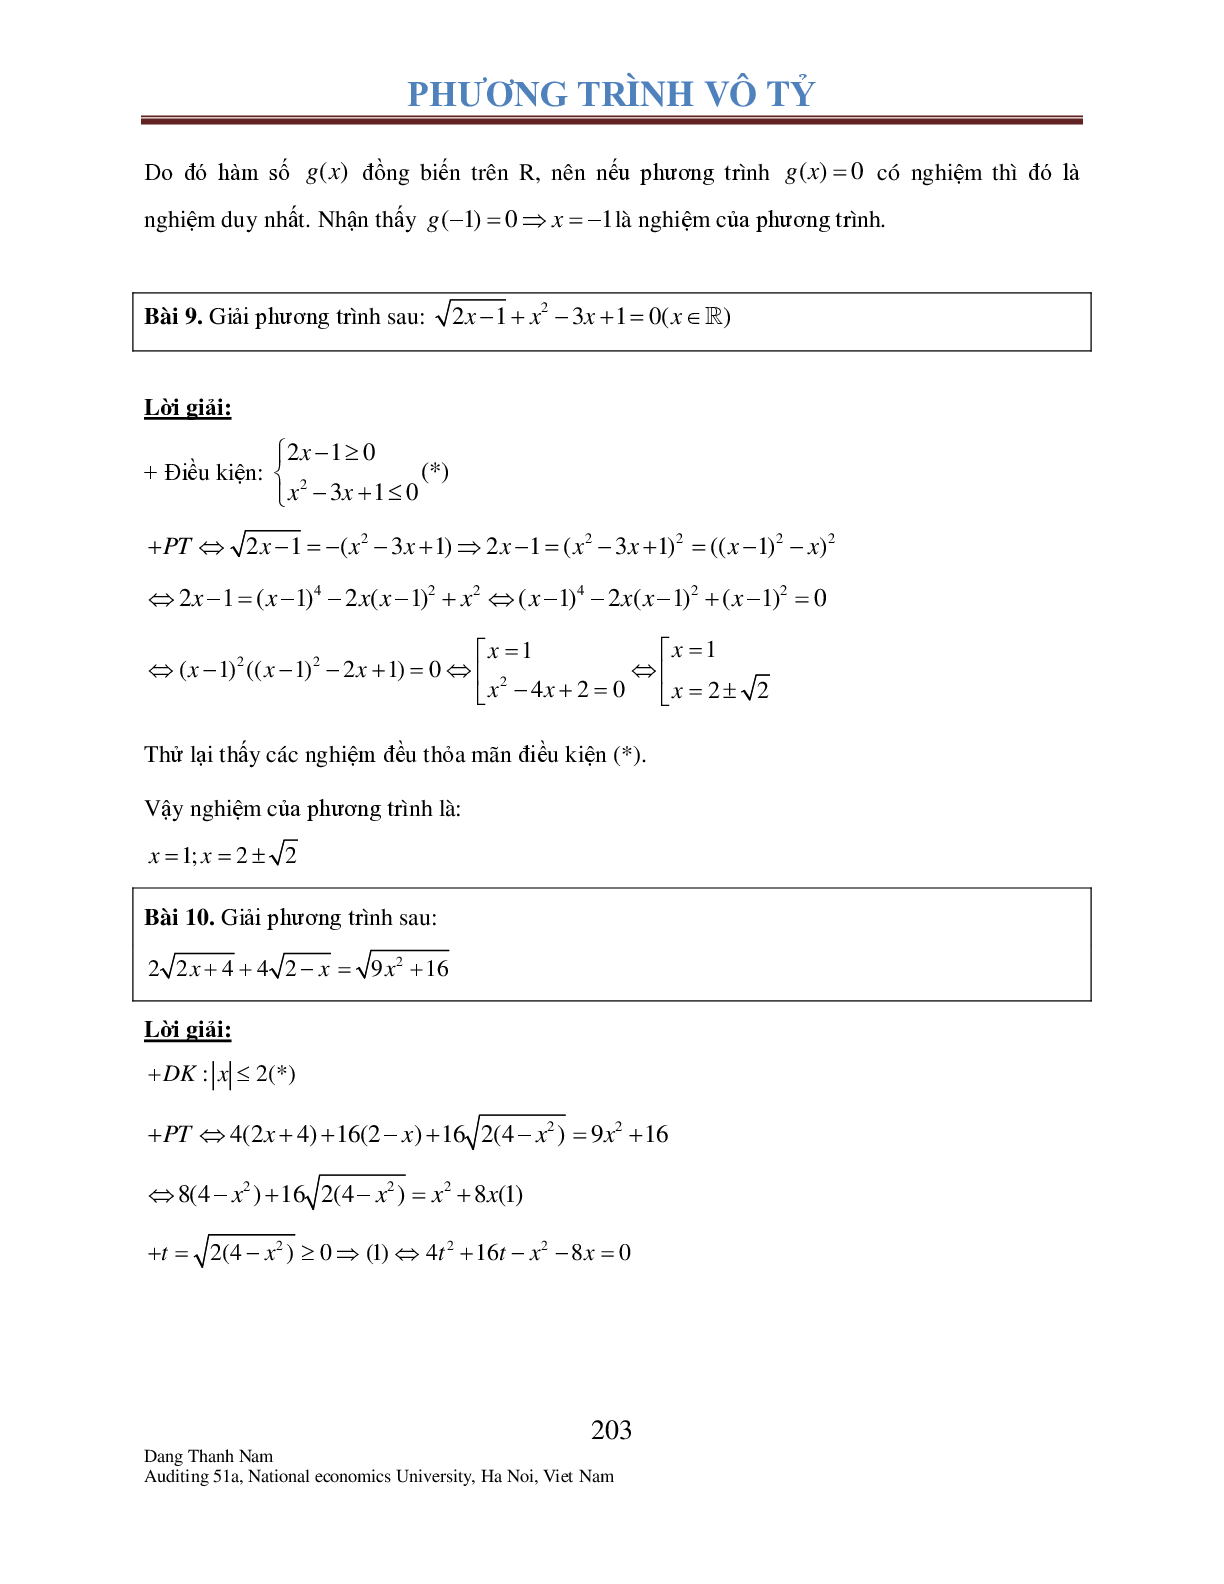 Chuyên đề phương trình Vô tỉ (trang 8)